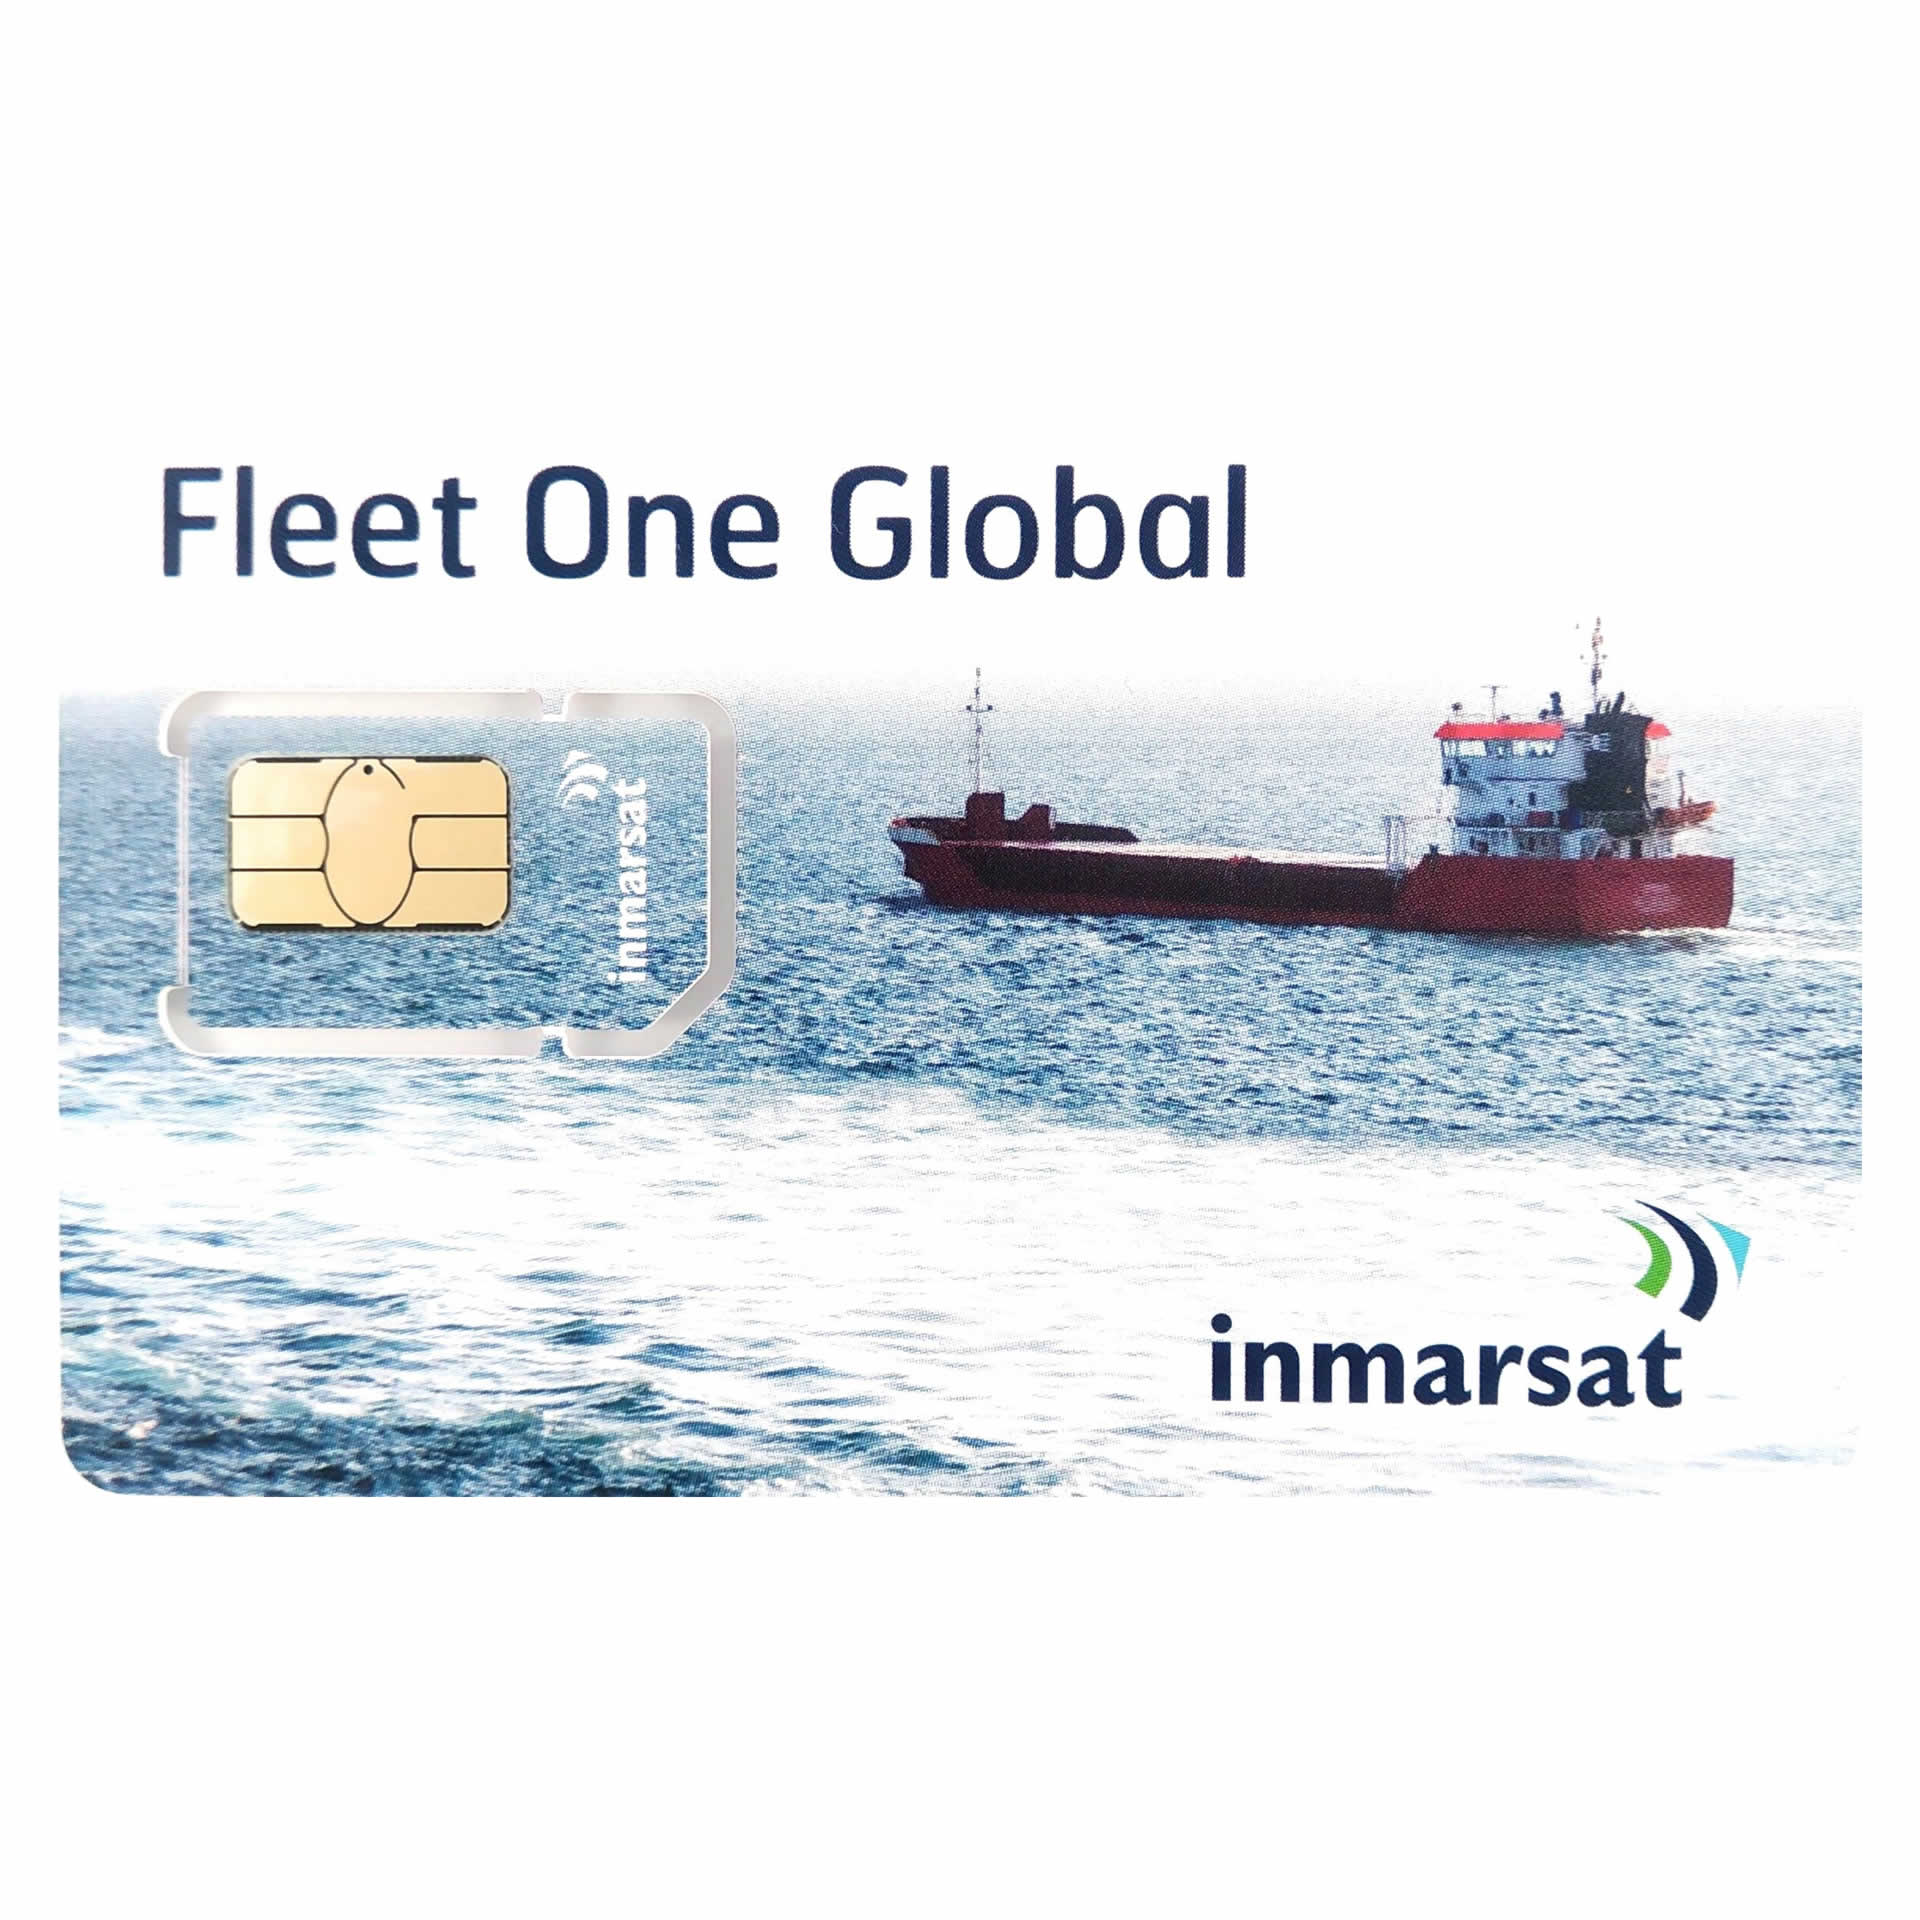 INMARSAT GLOBAL FLEET ONE Prepaid Reloadable Card - 1500 UNITS - 180 DAYS